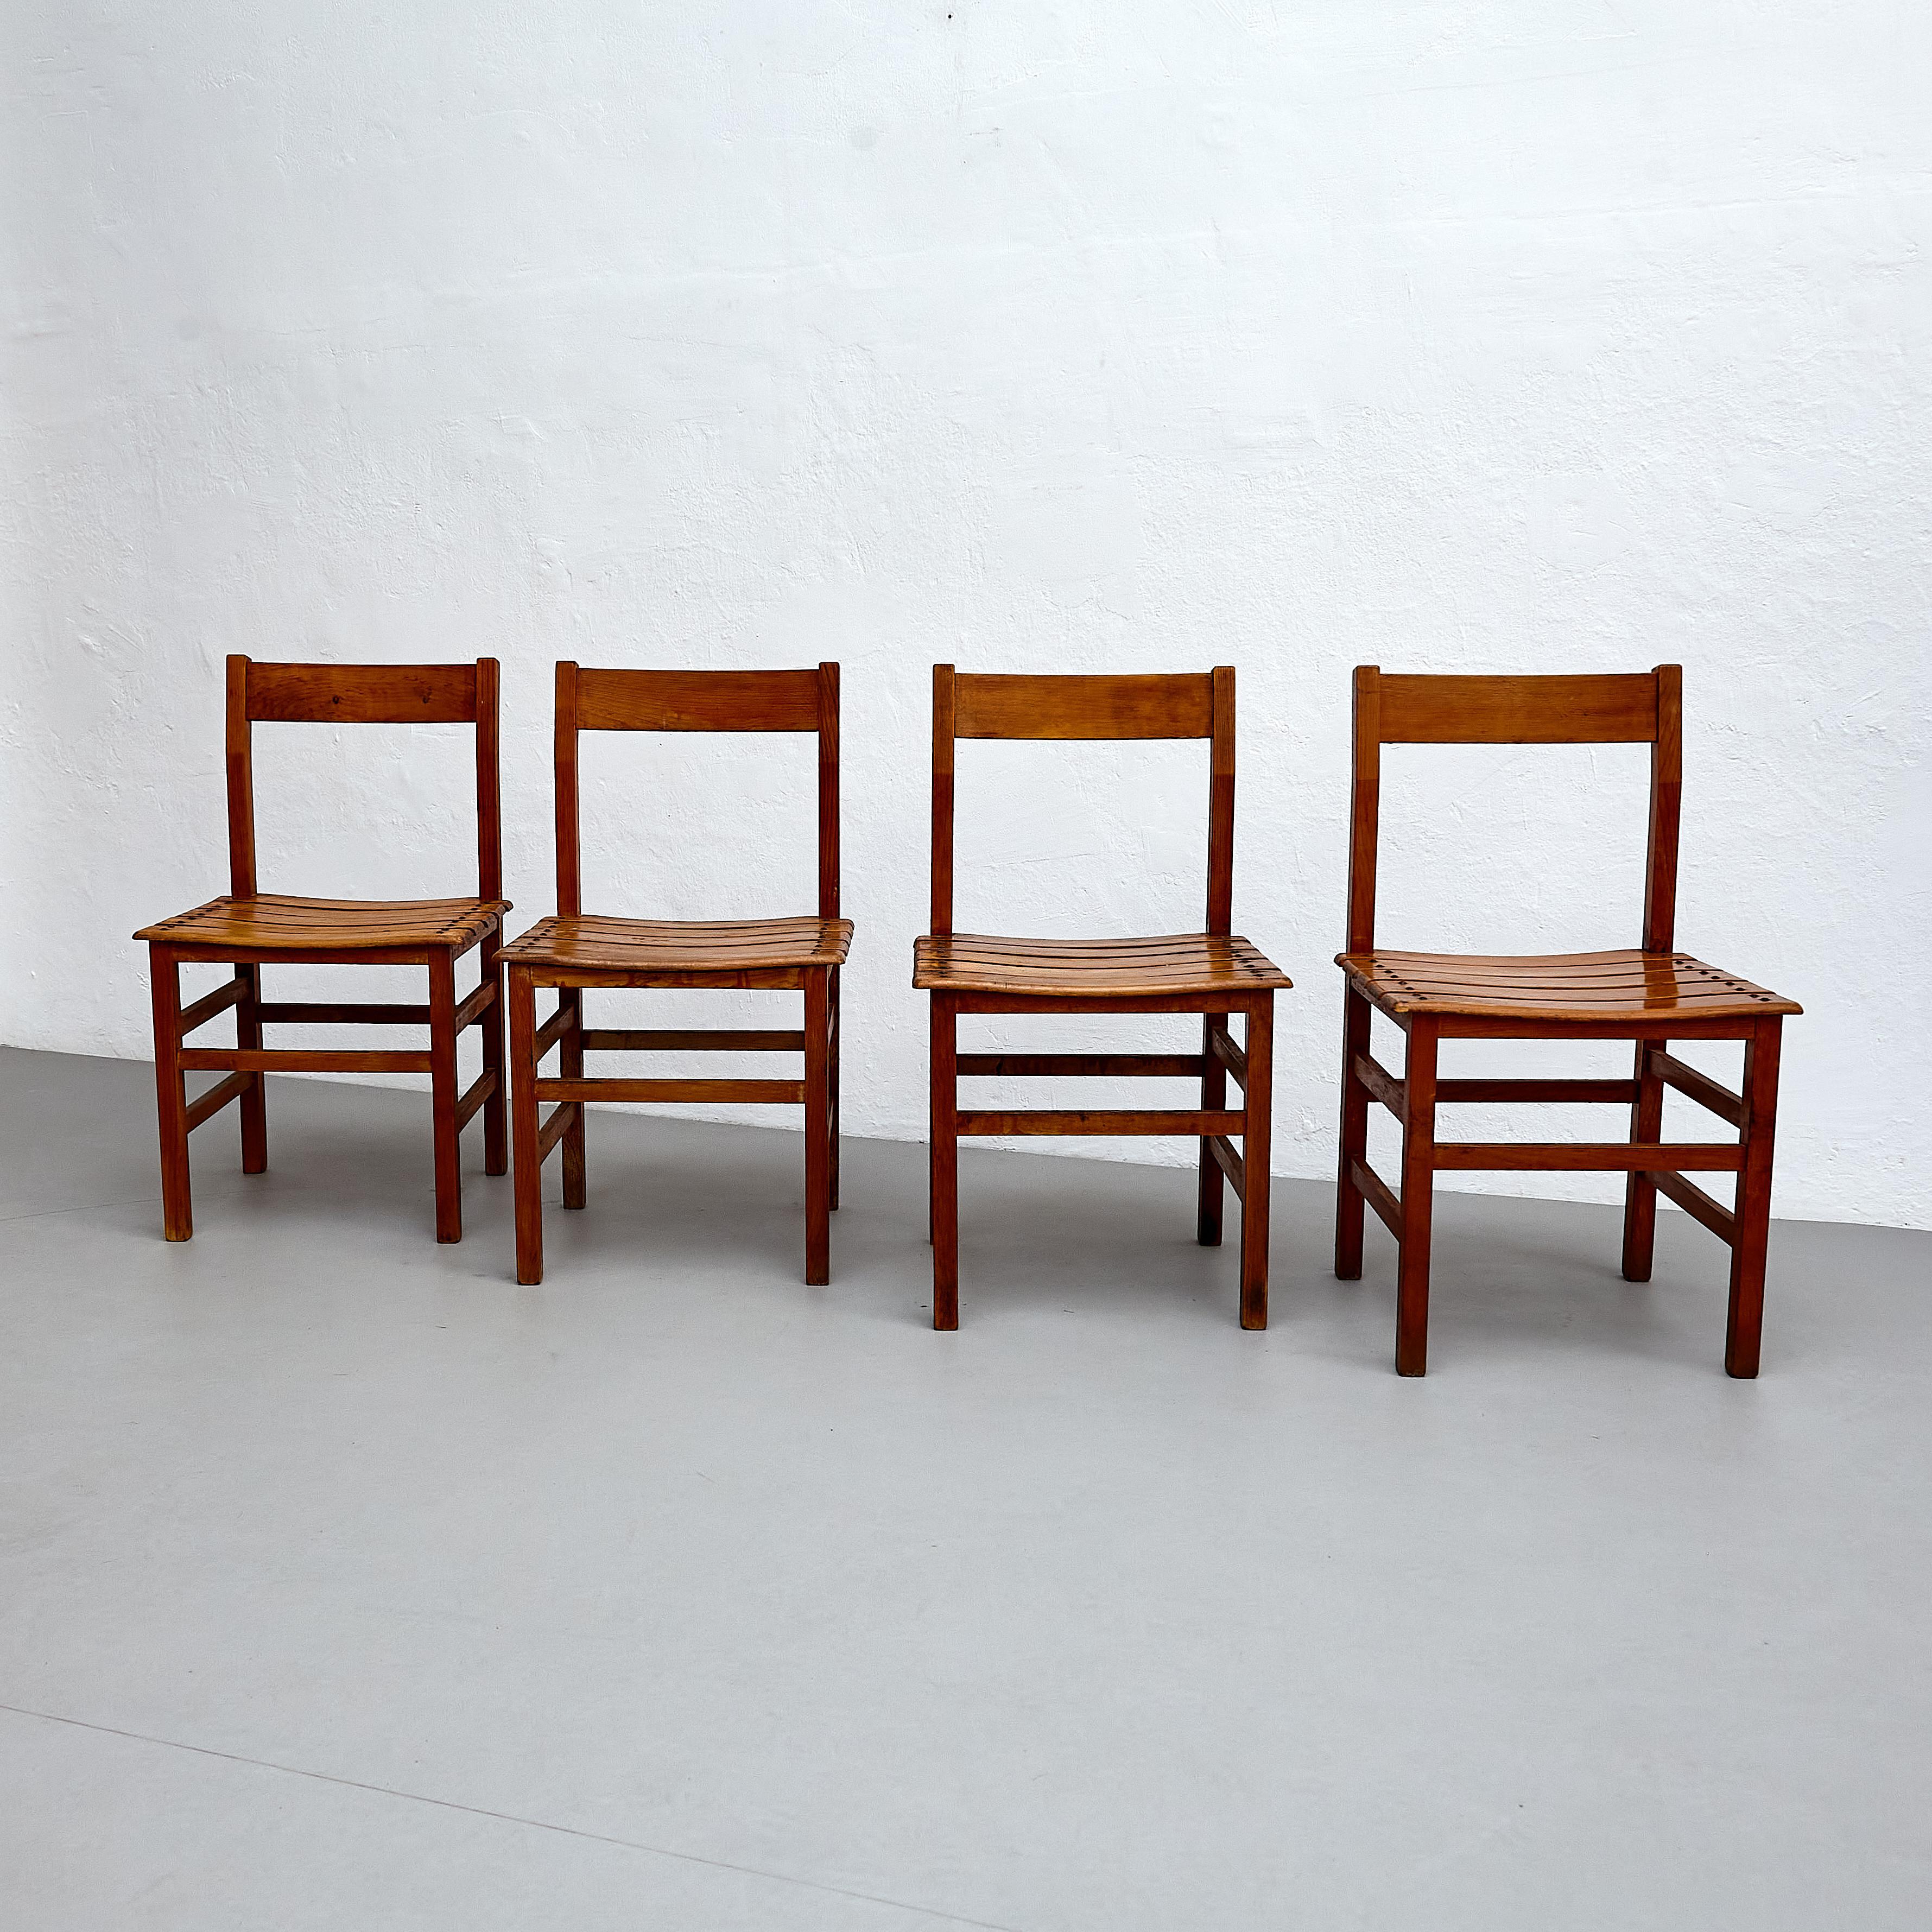 Satz von vier rustikalen französischen Holzstühlen.

Lassen Sie sich vom rustikalen Charme dieses Sets aus vier rationalistischen Holzstühlen aus der Mitte des Jahrhunderts verzaubern, die um 1960 in Frankreich hergestellt wurden. Das zeitlose